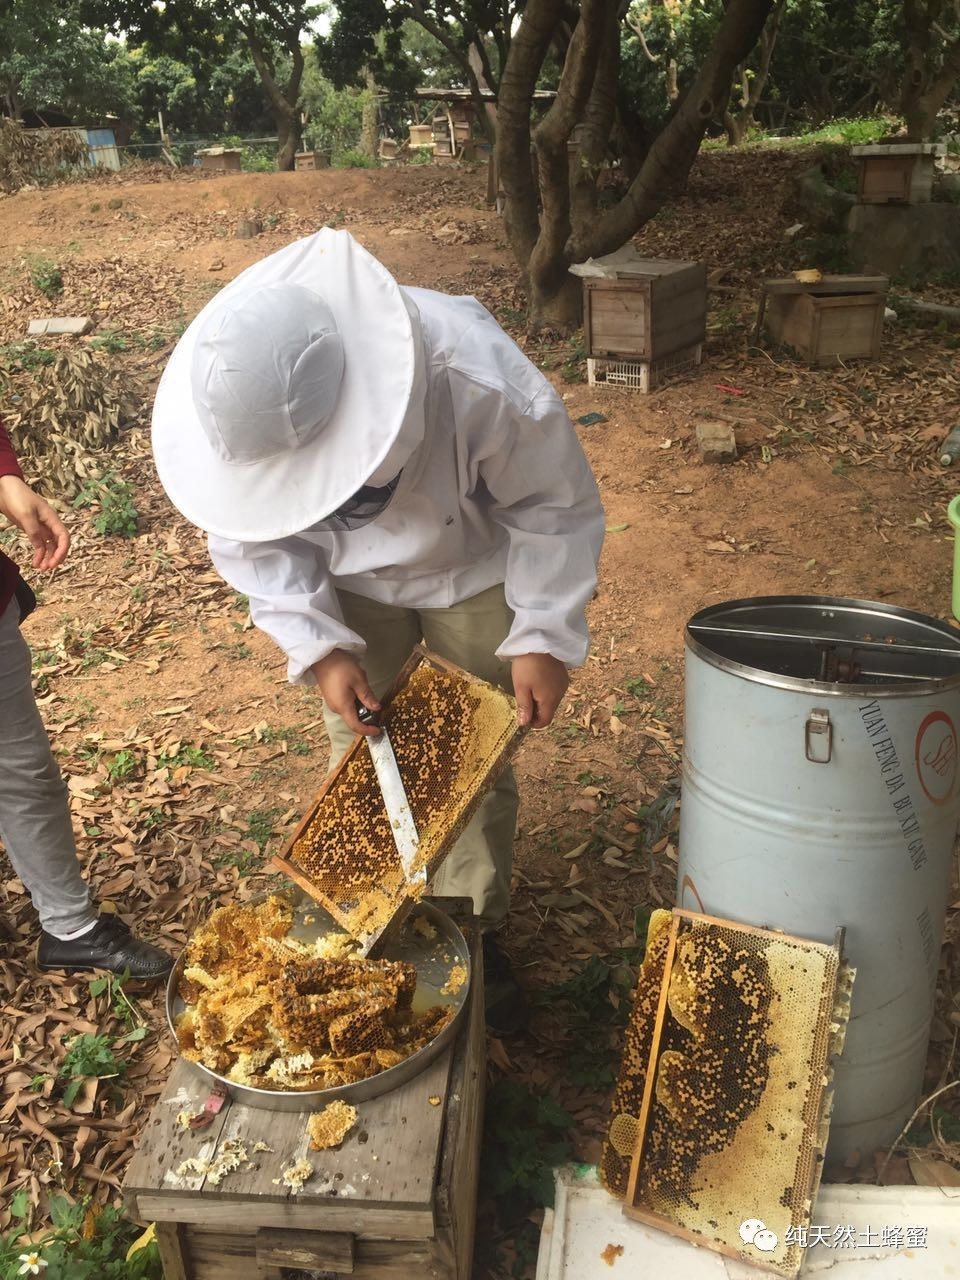 蜂蜜销售 鸡蛋清蜂蜜敷脸 鸡蛋清蜂蜜面膜的作用 功能 哪家蜂蜜好